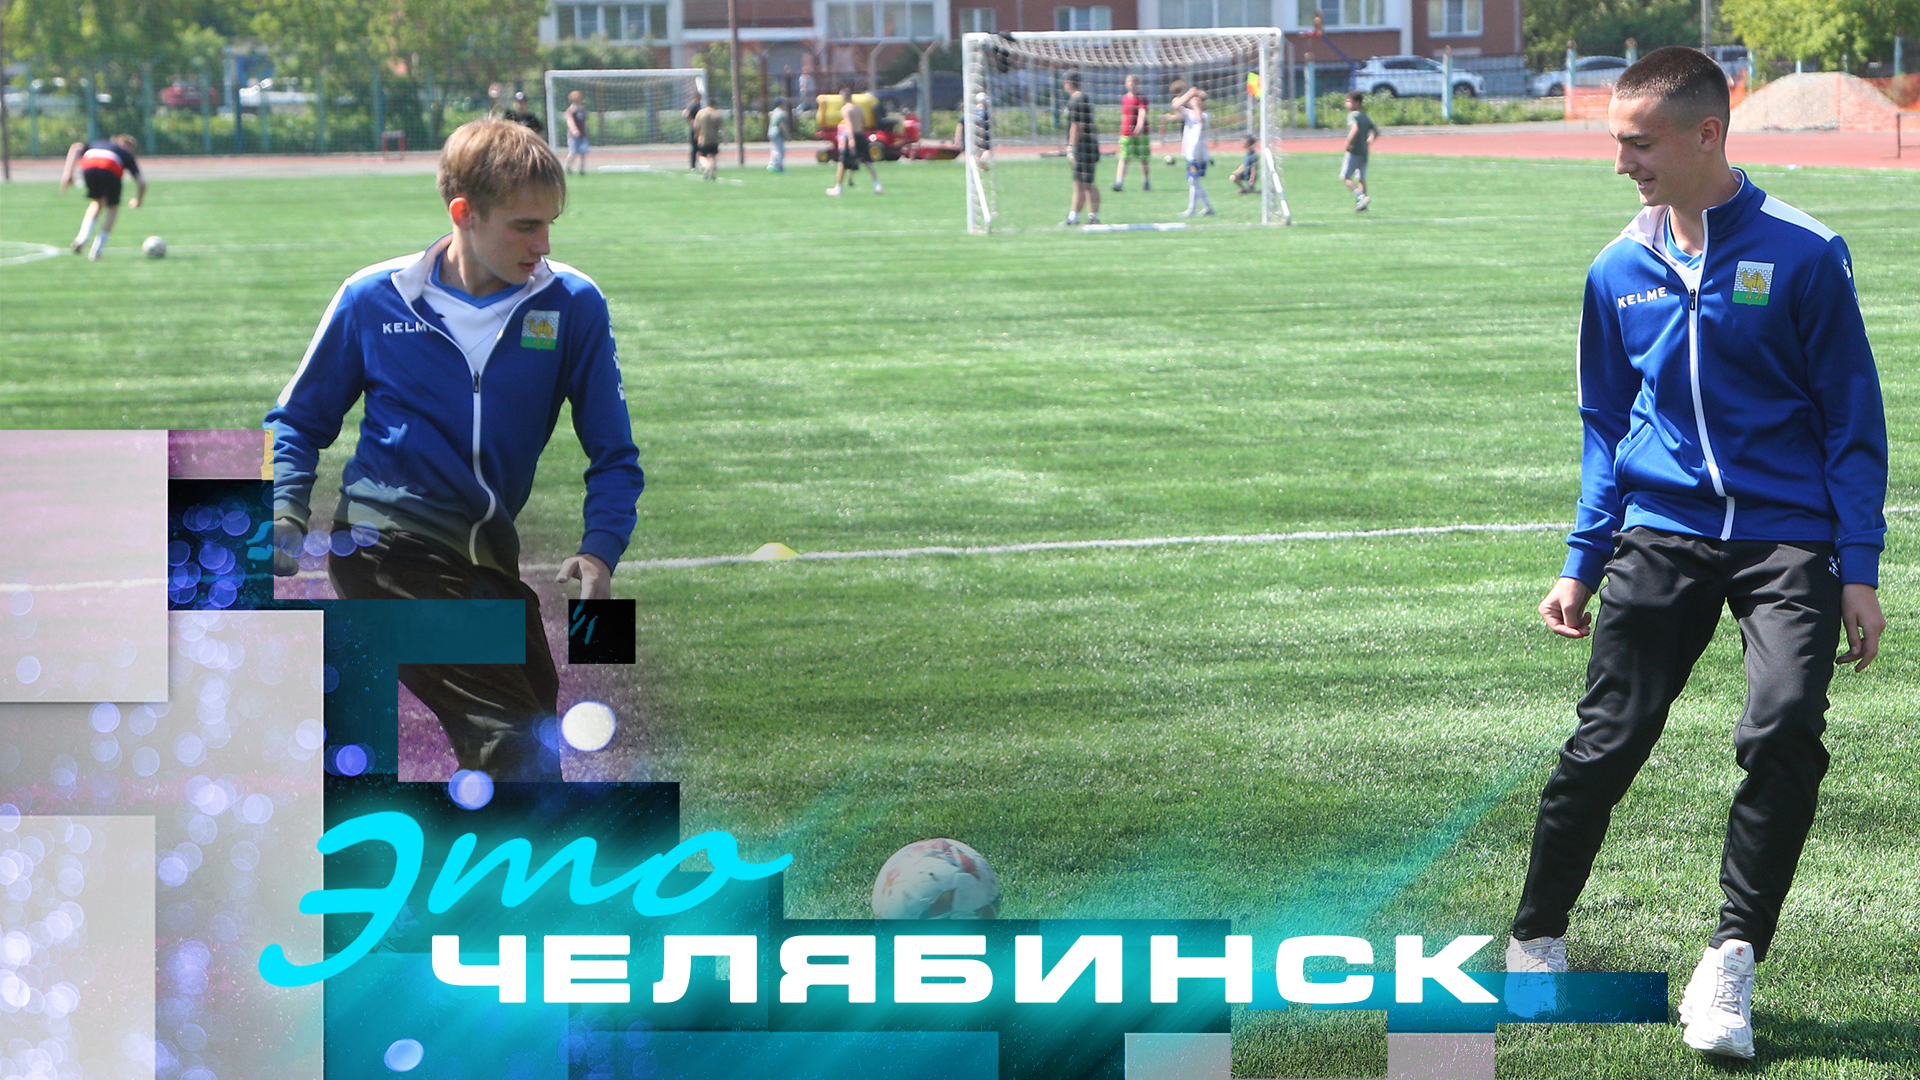 Это Челябинск: бесплатные тренировки по футболу, обновление стадиона "Лидер"